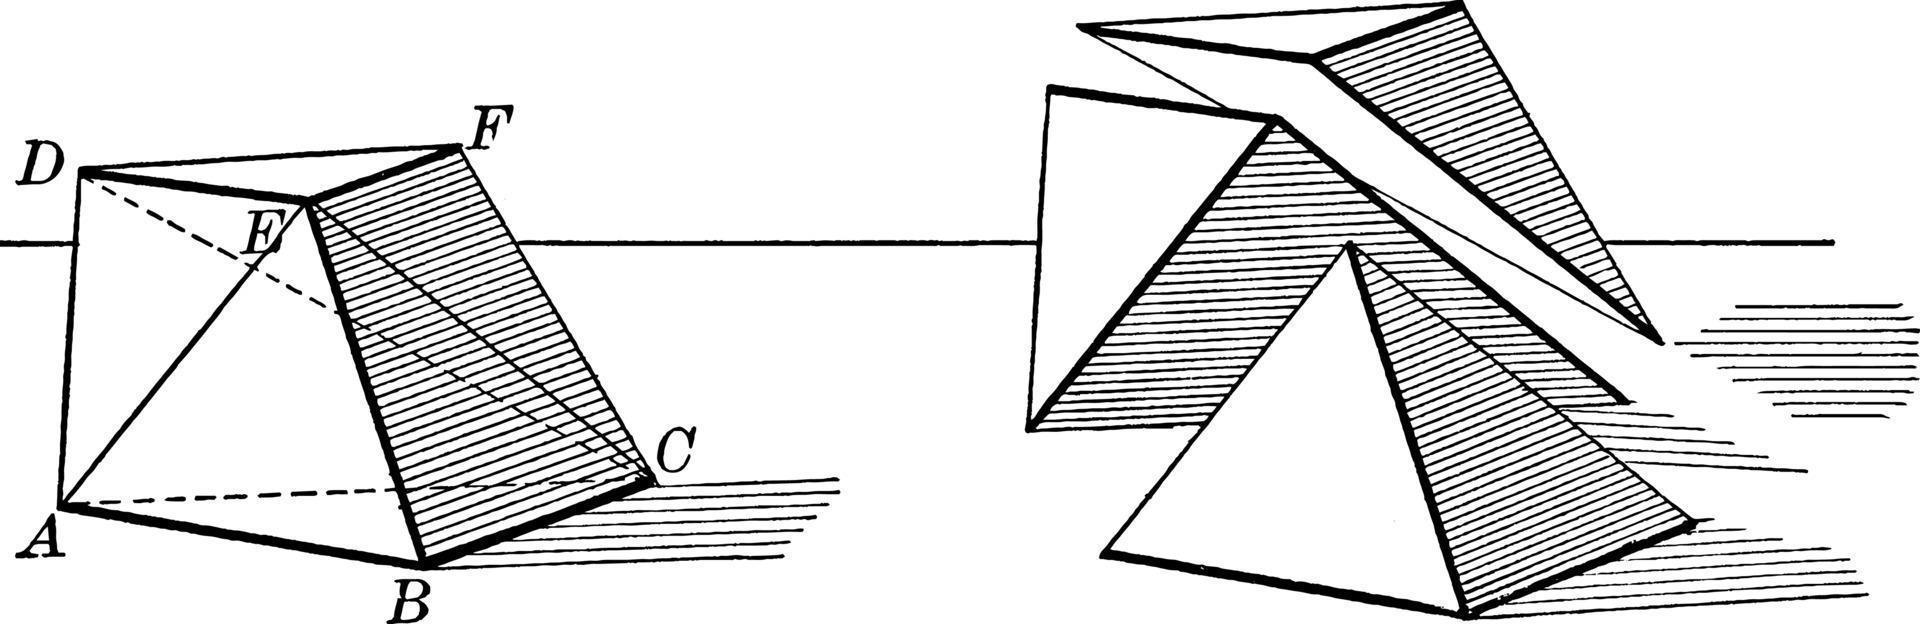 tronc de pyramide triangulaire, illustration vintage. vecteur